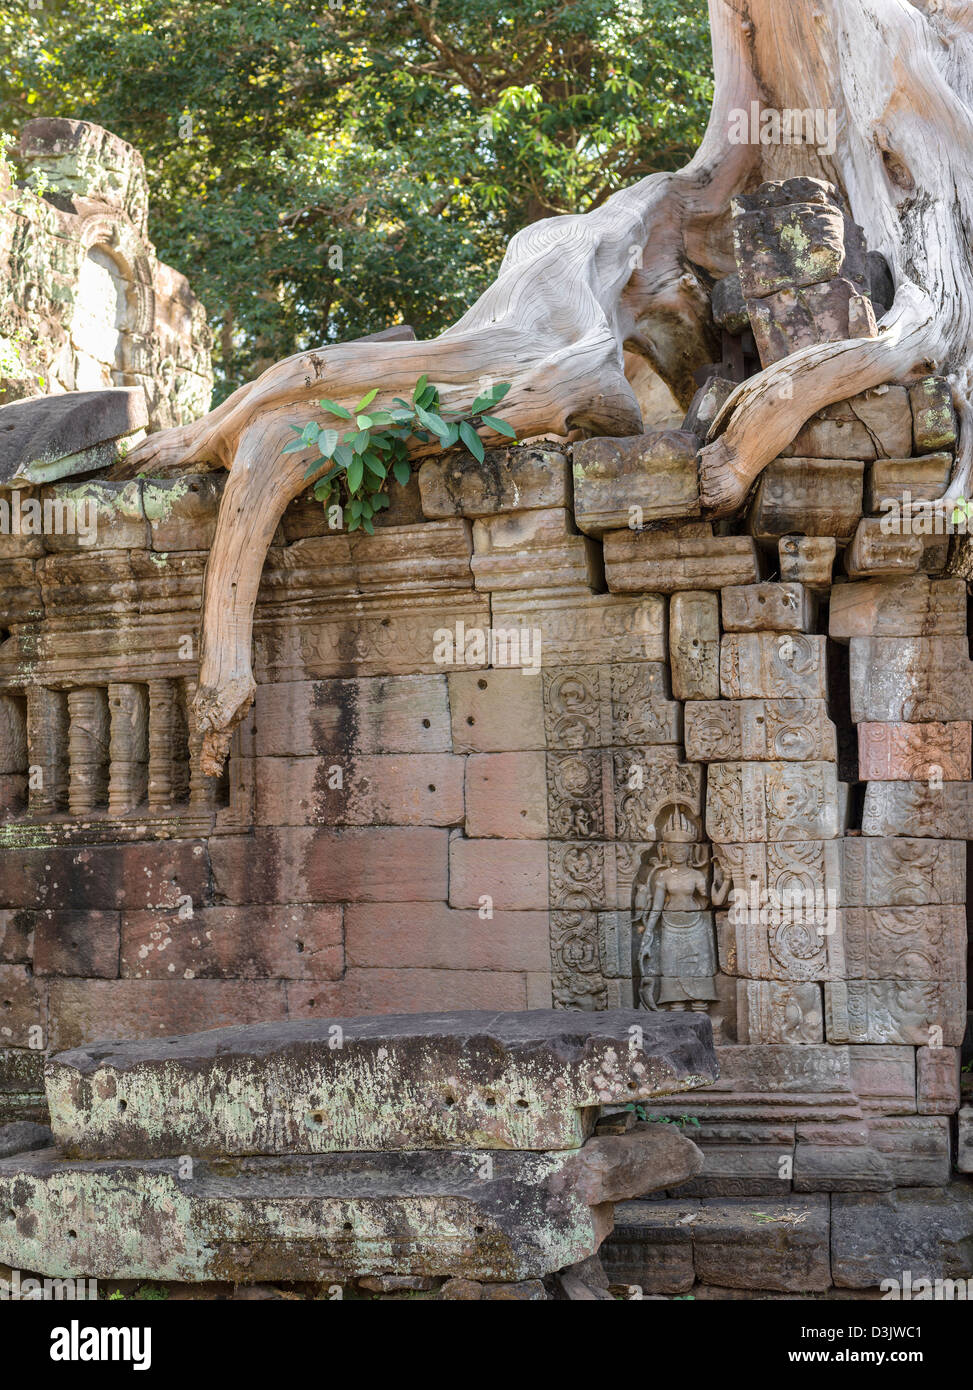 Preah Khan i resti di un tempio. Angkor. Cambogia Foto Stock